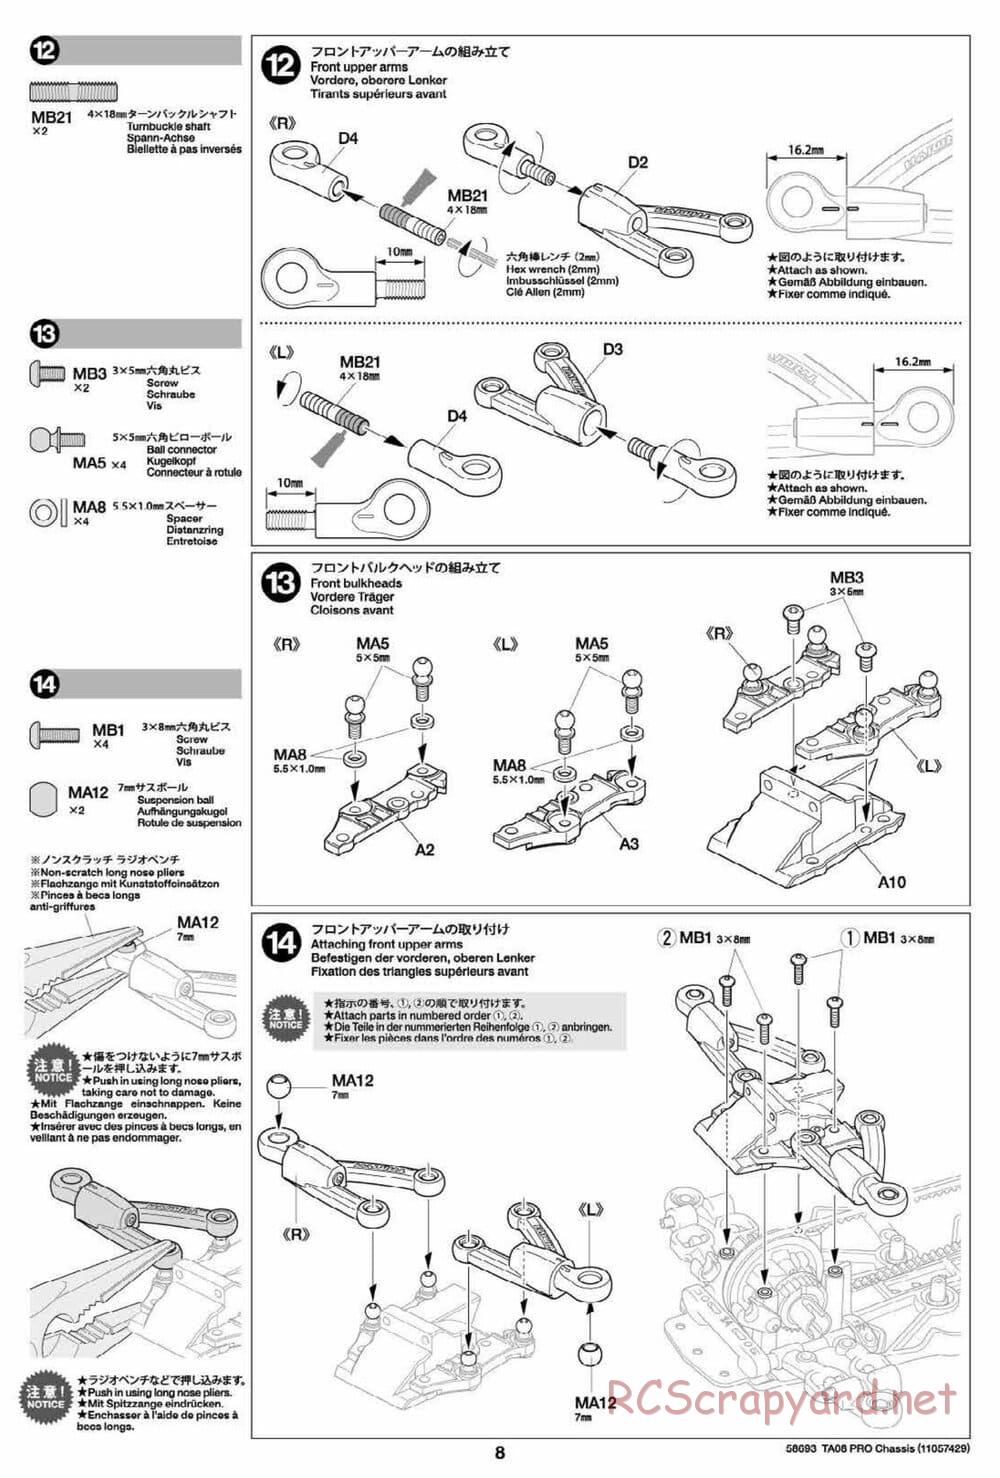 Tamiya - TA08 Pro Chassis - Manual - Page 8